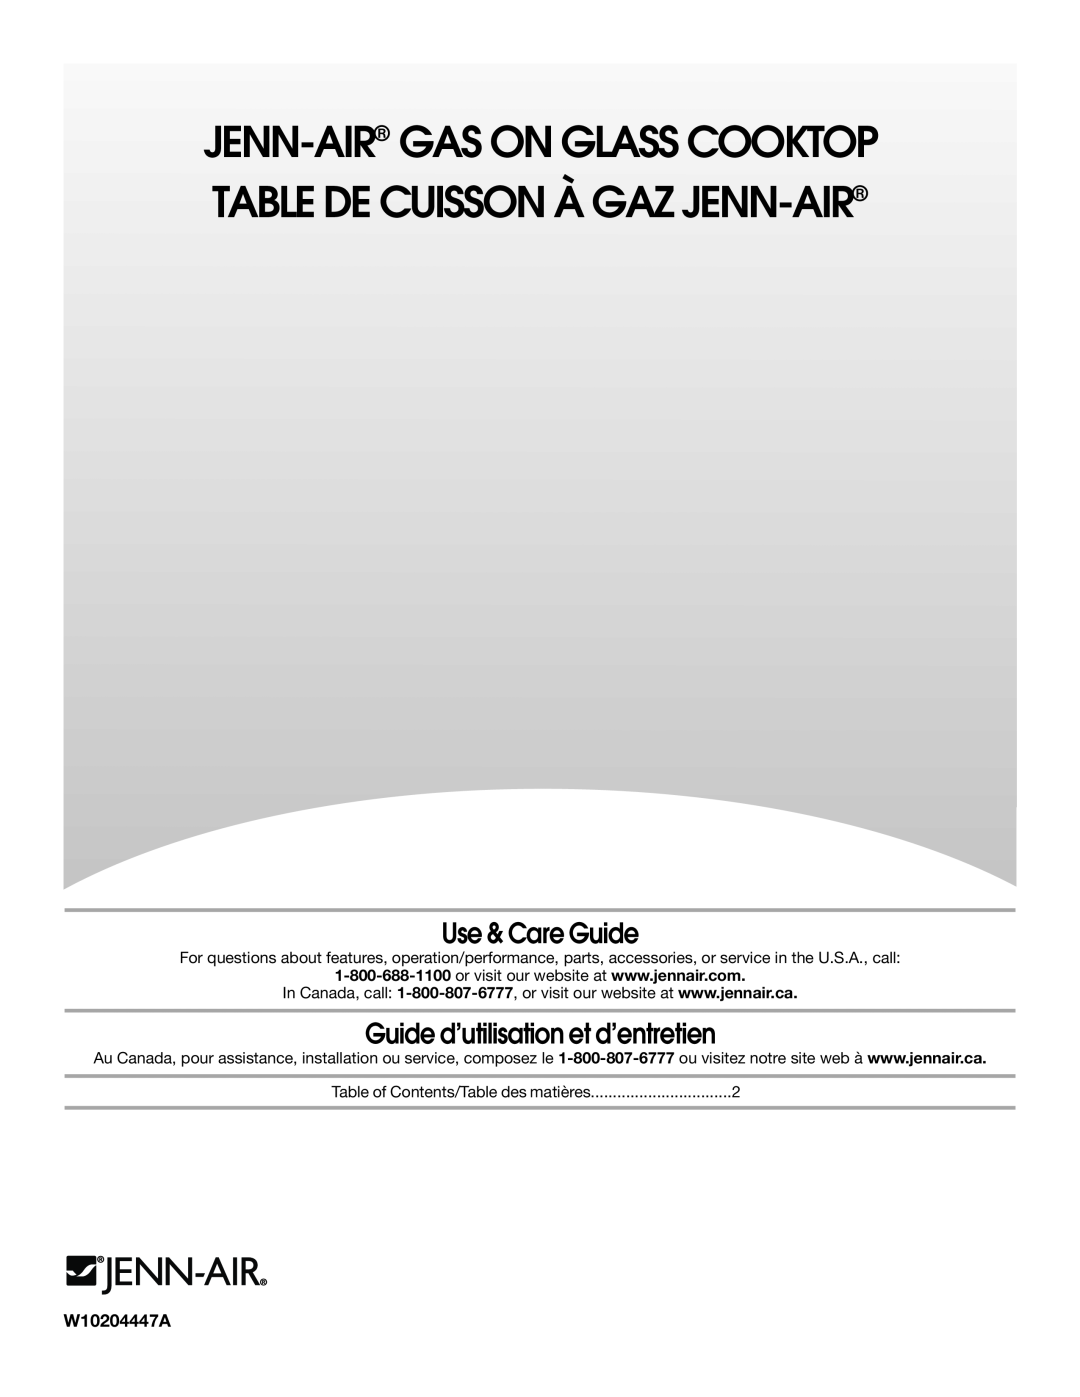 Jenn-Air W10204447A manual Jenn-Air Gas On Glass Cooktop Table De Cuisson À Gaz Jenn-Air, Use & Care Guide 